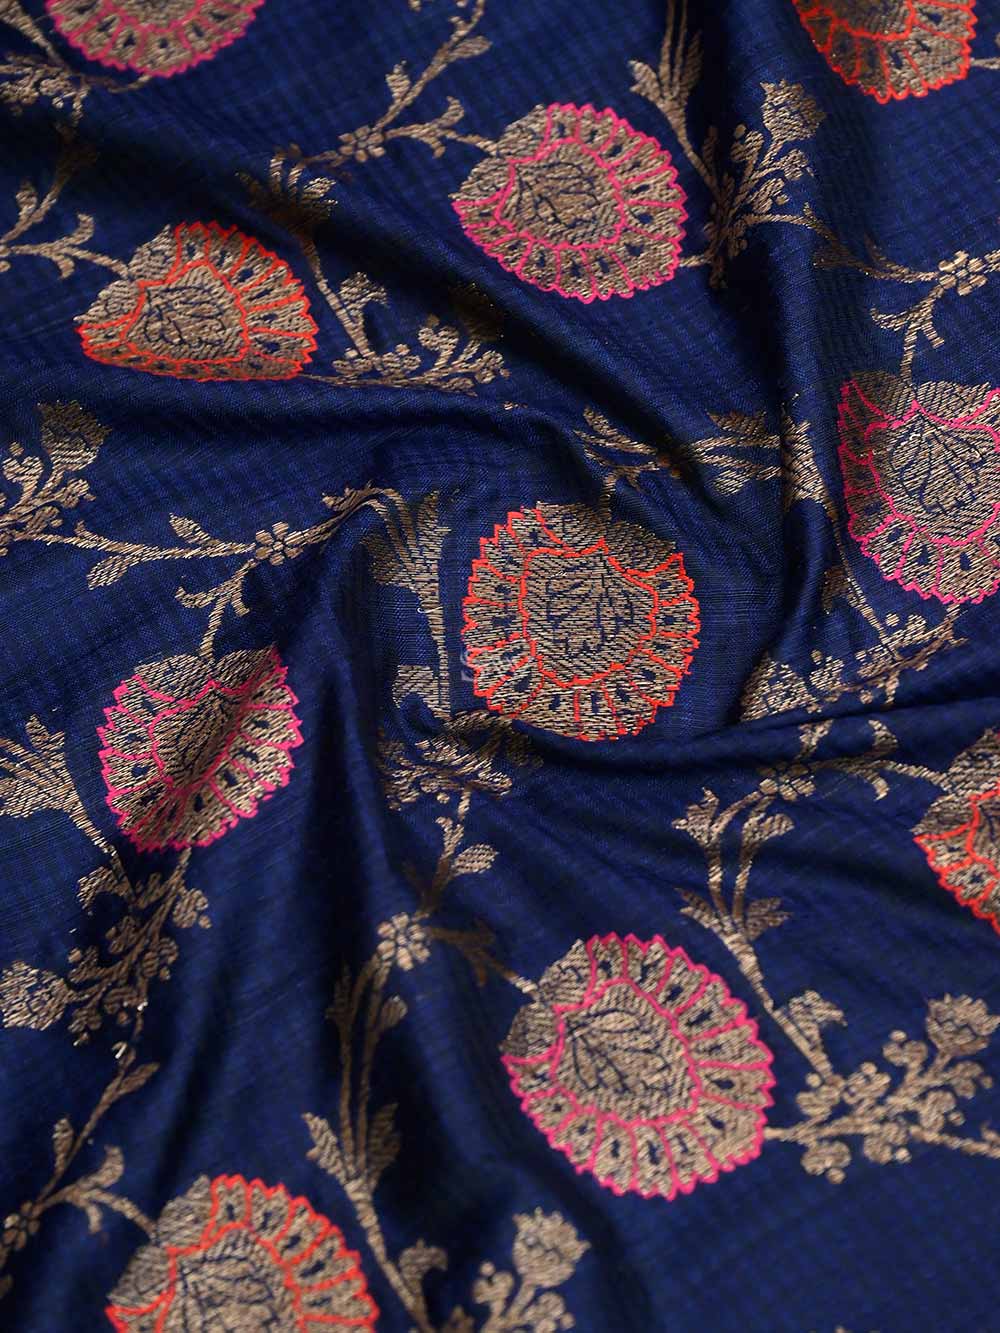 Navy Blue Meenakari Jaal Dupion Silk Handloom Banarasi Saree - Sacred Weaves